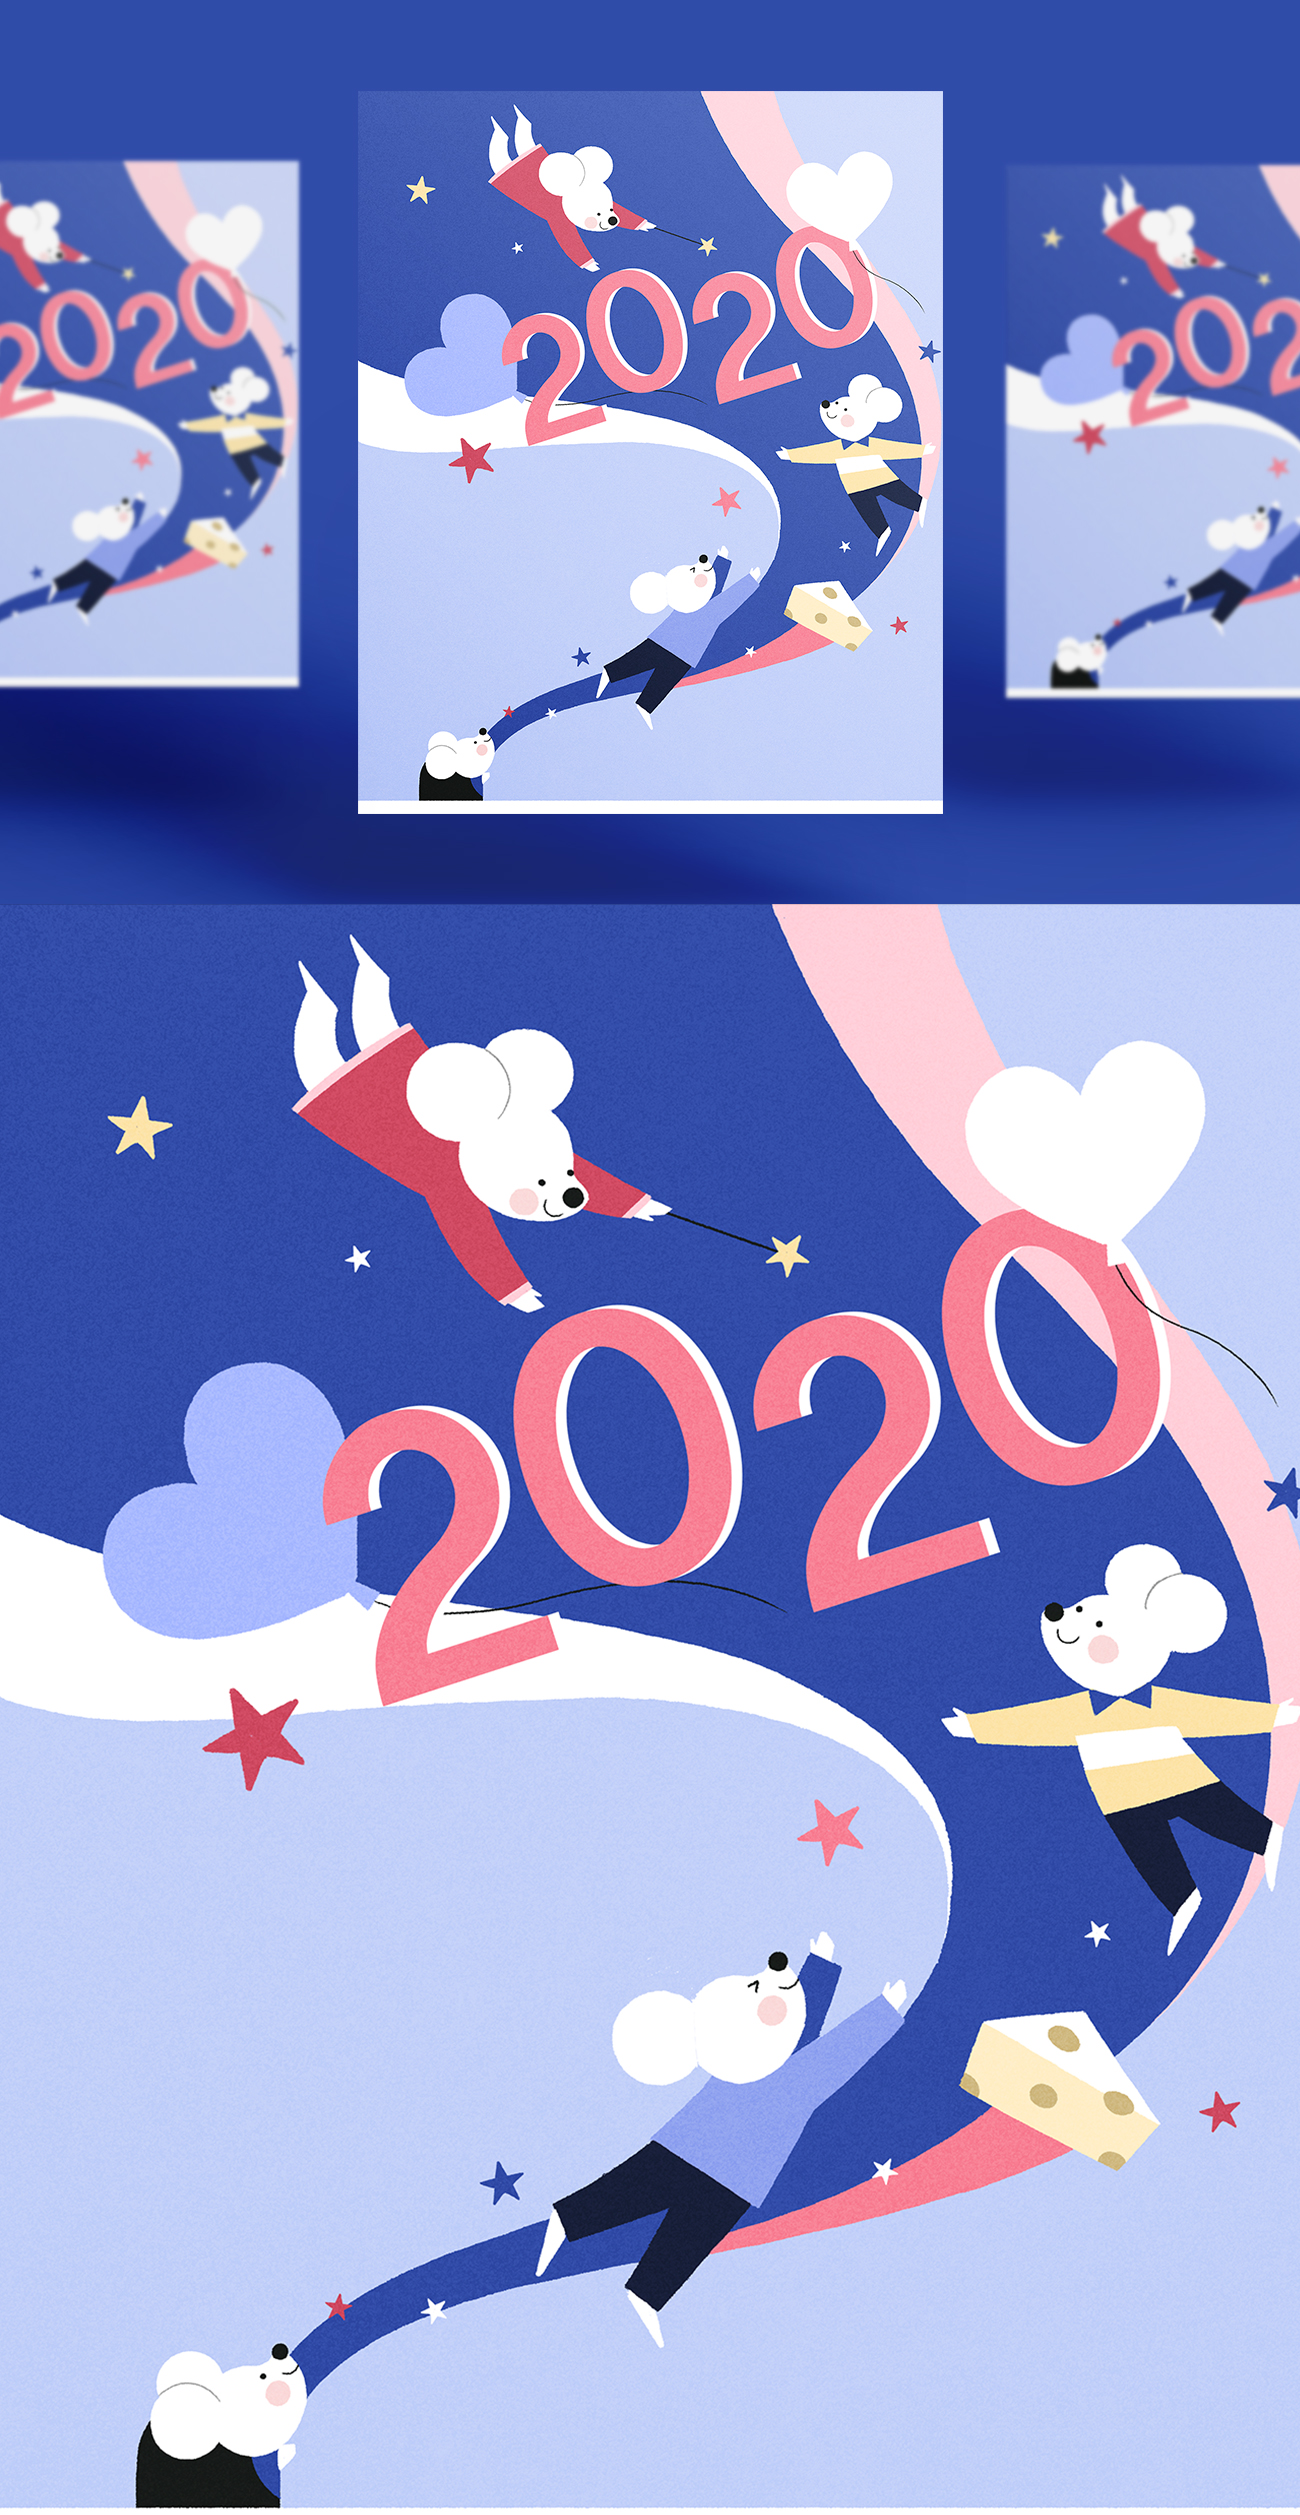 冬季滑雪2020年卡通可爱风格鼠年海报模板